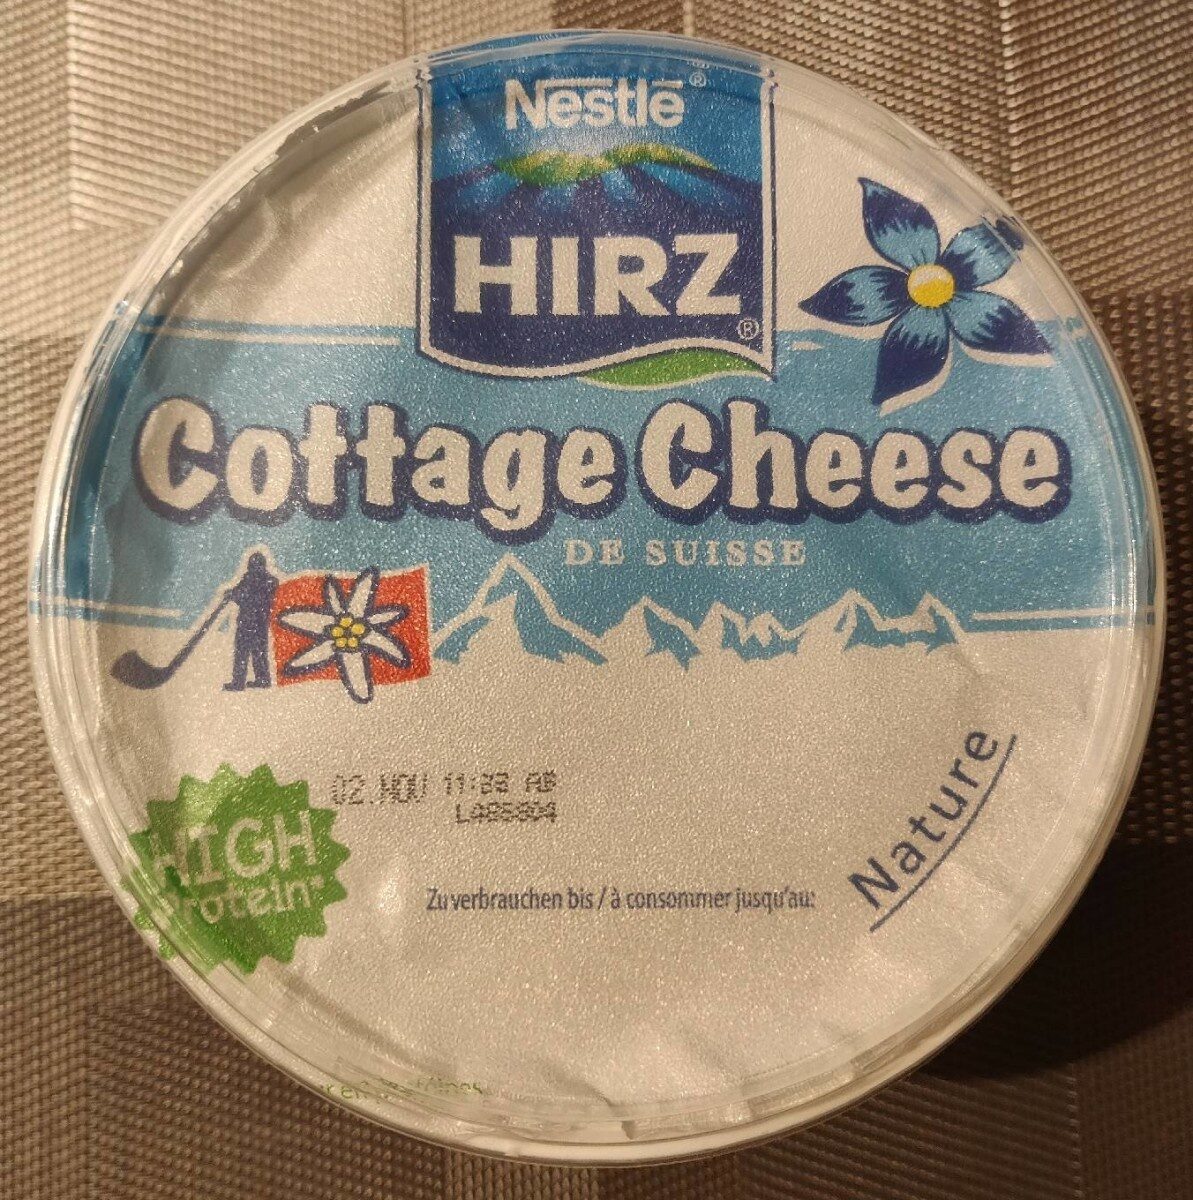 Nestlé Hirz Cottage Cheese - Produit